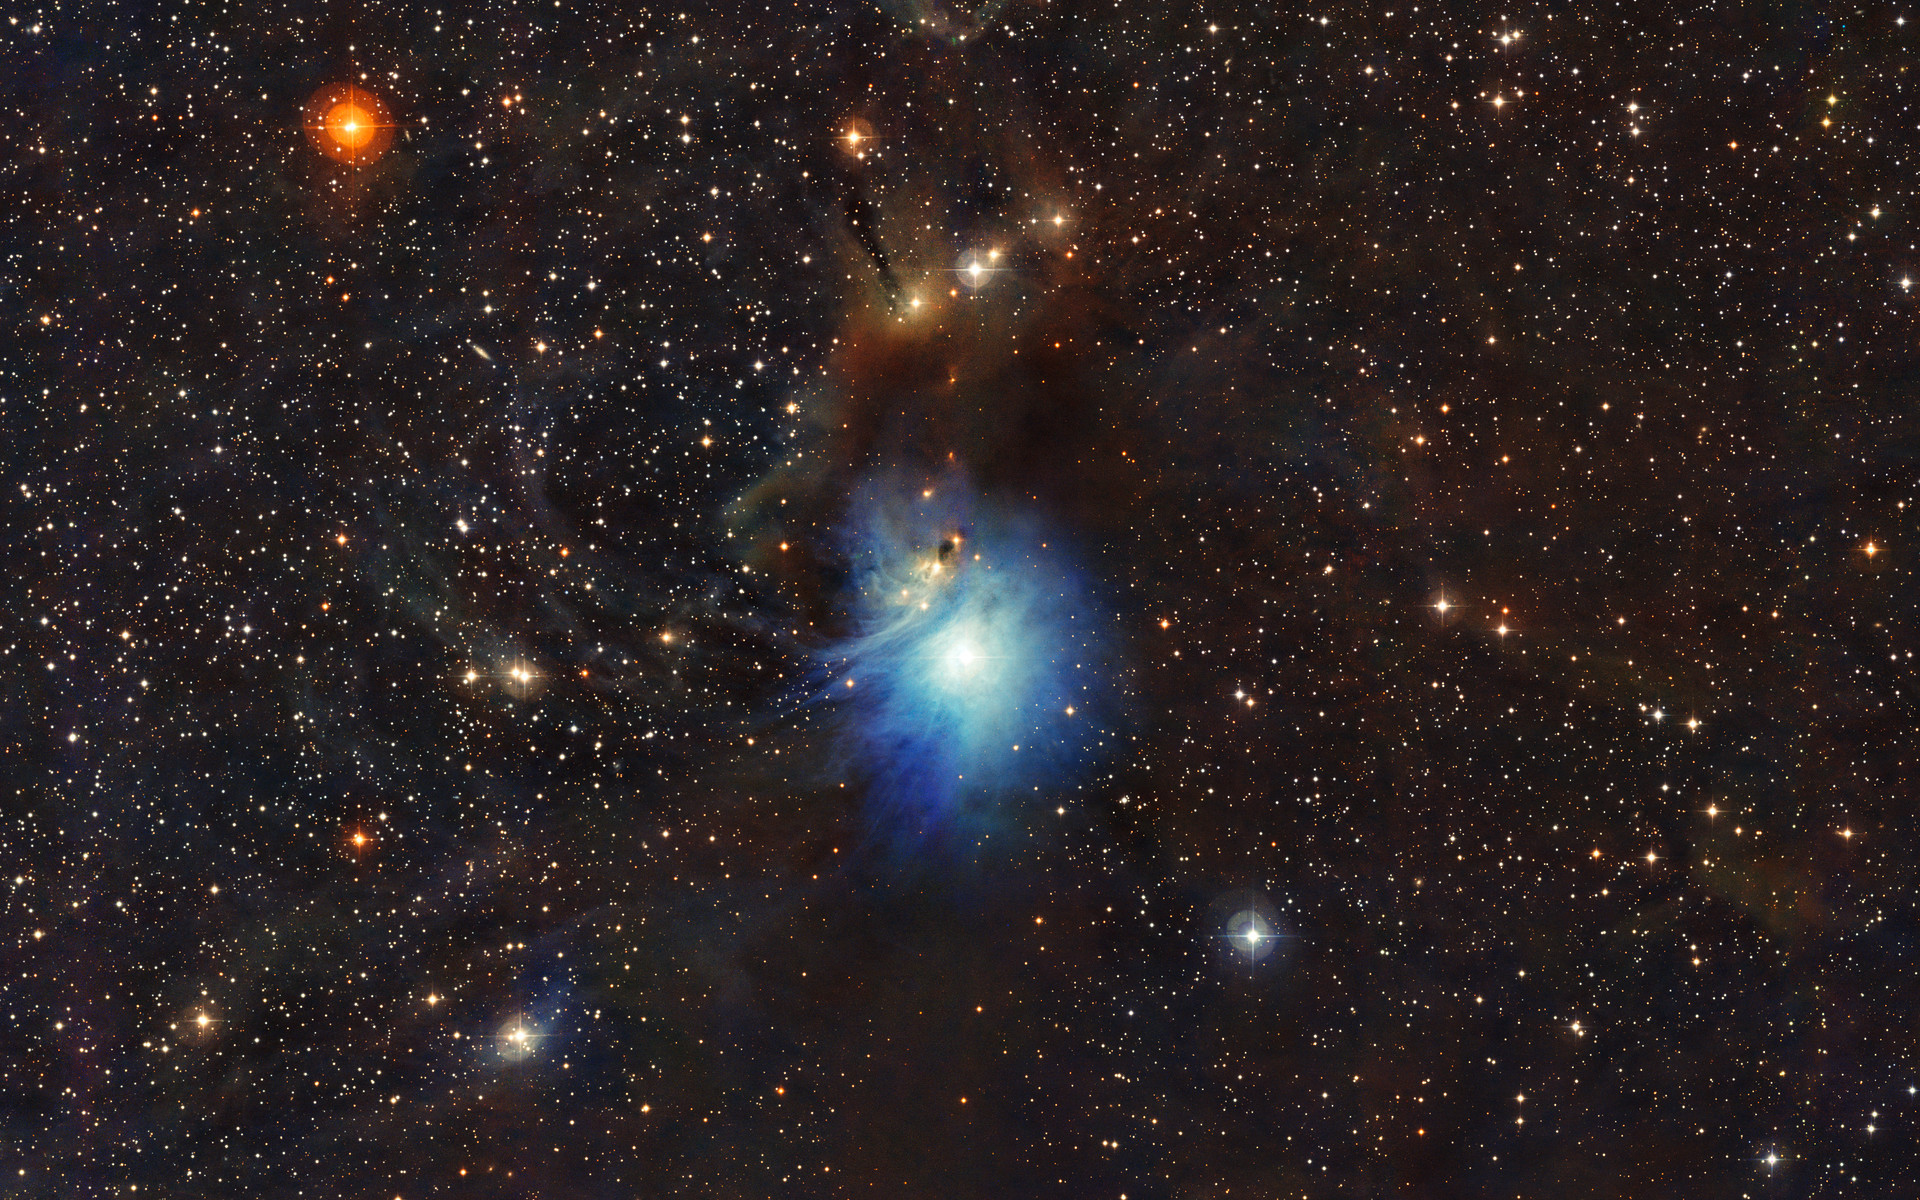 Zdjęcie mgławicy refleksyjnej IC 2631, którą oświetla rodząca się gwiazda HD 97300 (obiekt typu Herbig Ae/Be). Jest ona najmłodszą, najbardziej masywną i najjaśniejszą gwiazdą w tej okolicy (jasność V~9mag). Zdjęcie zostało wykonane 2.2 metrowym teleskopem MPG/ESO w La Silla (Chile).) Źródło ESO